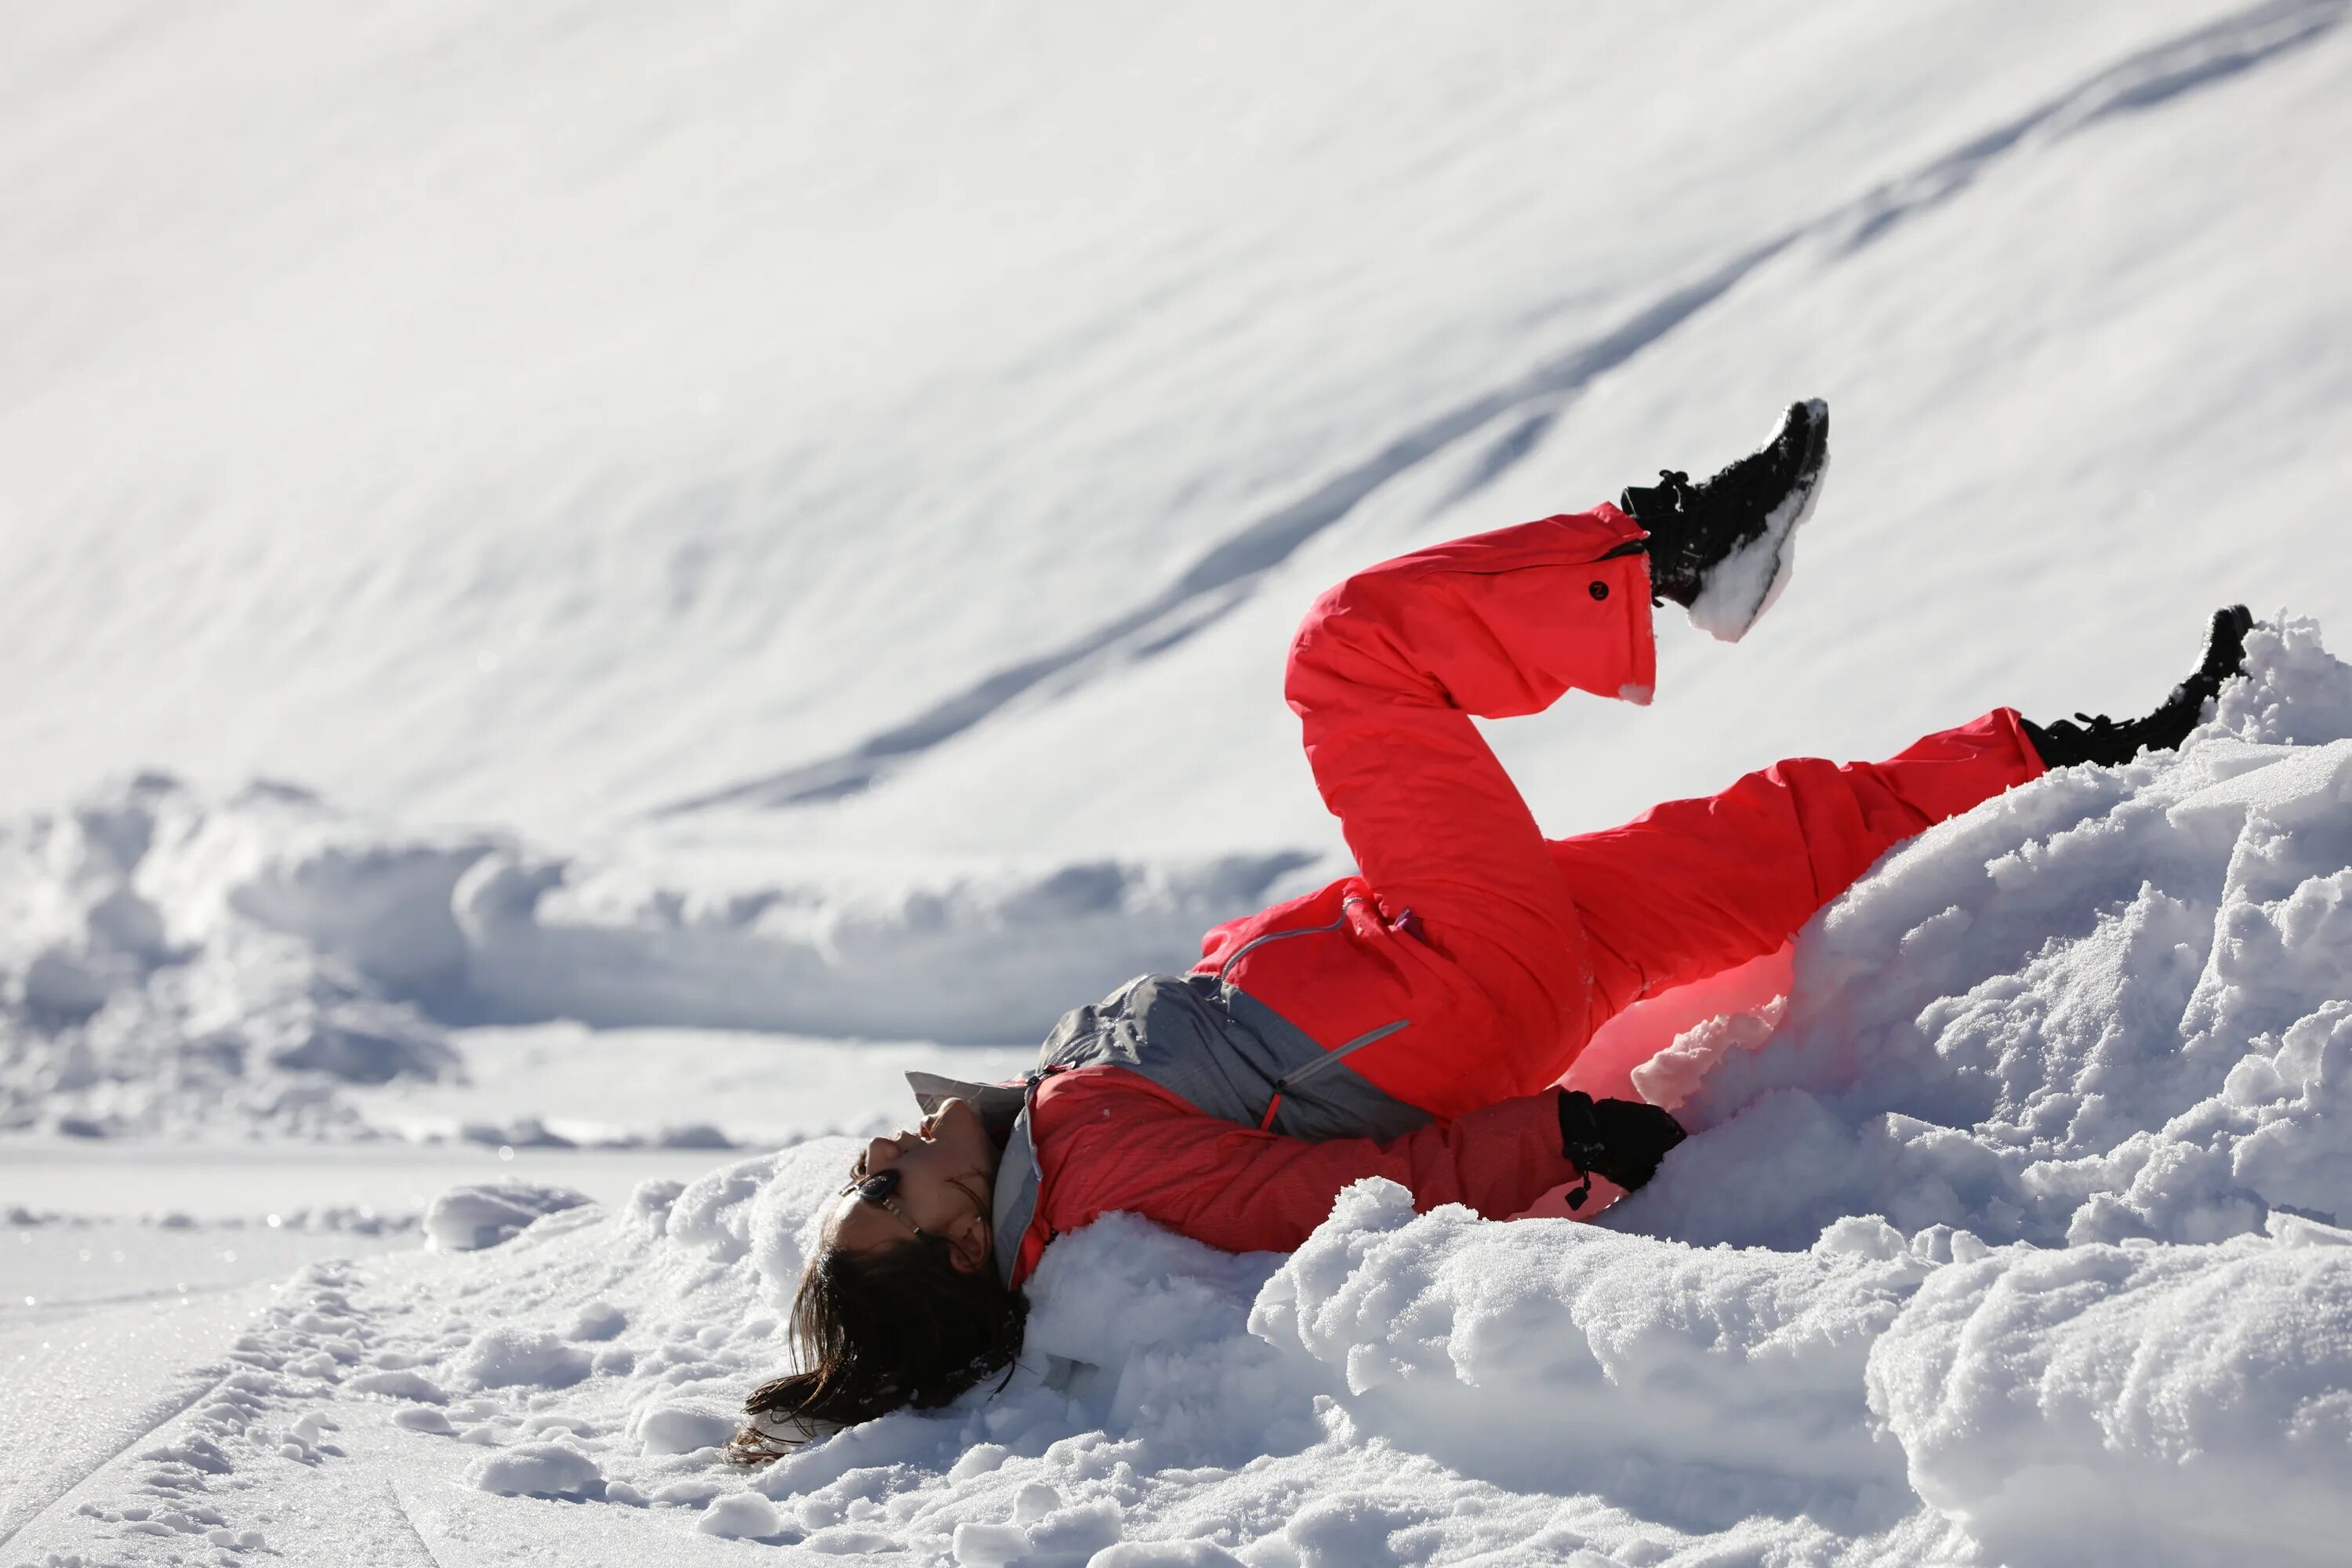 Валяться в снегу. Снег спорт. Зима спорт. Спорт зимой. От холодного встречного ветра у лыжников замерзли